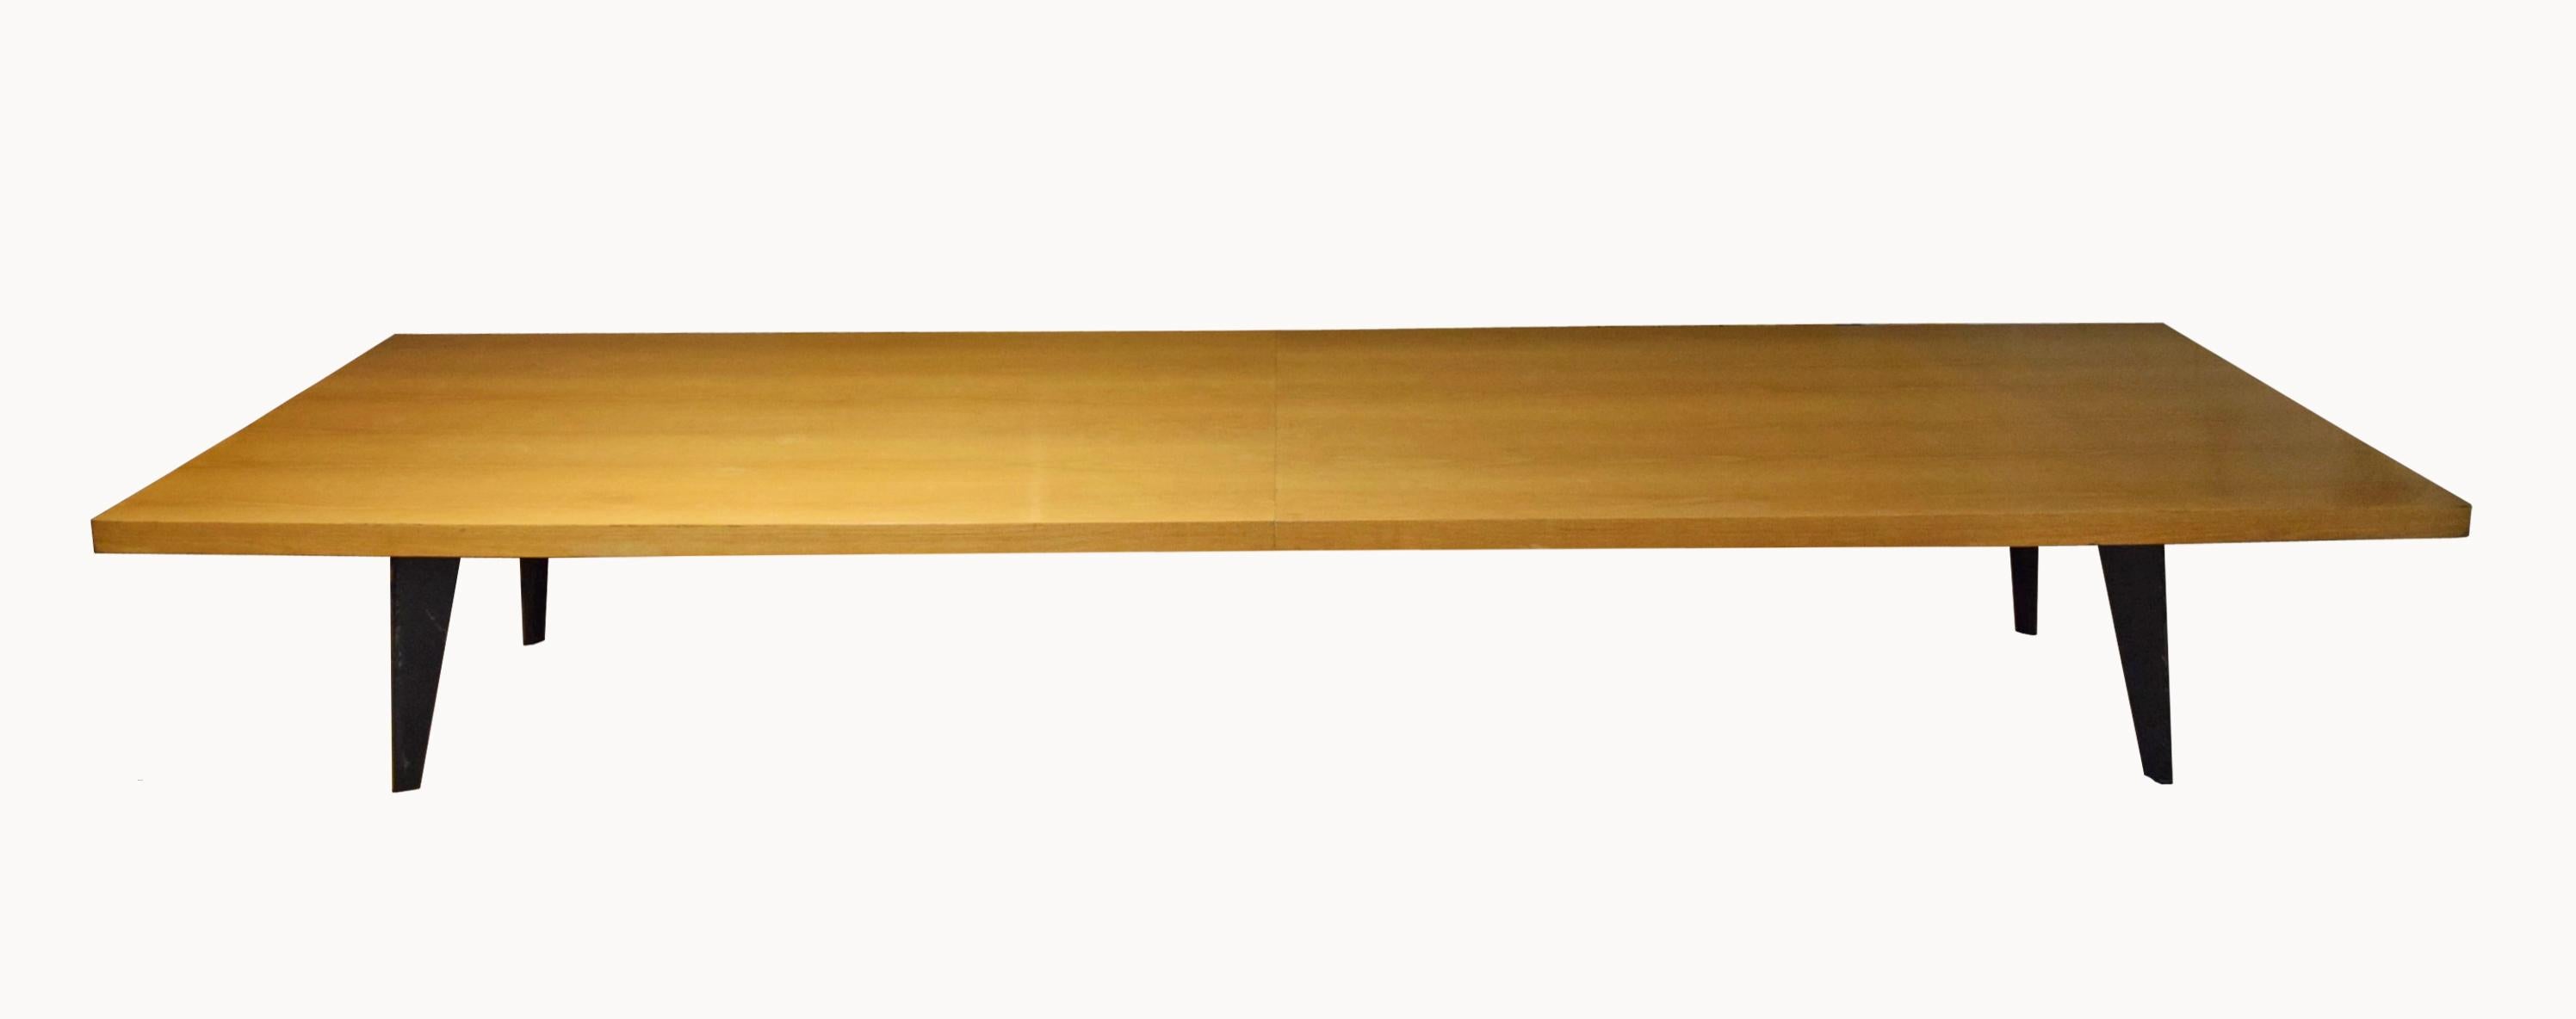 Table de conférence de 14 pieds de long fabriquée sur mesure en 1982 dans le style Prouvé. La table a quatre pieds angulaires en acier émaillé noir et un plateau en bois massif de 3 pouces d'épaisseur. Toutes les informations sur le propriétaire